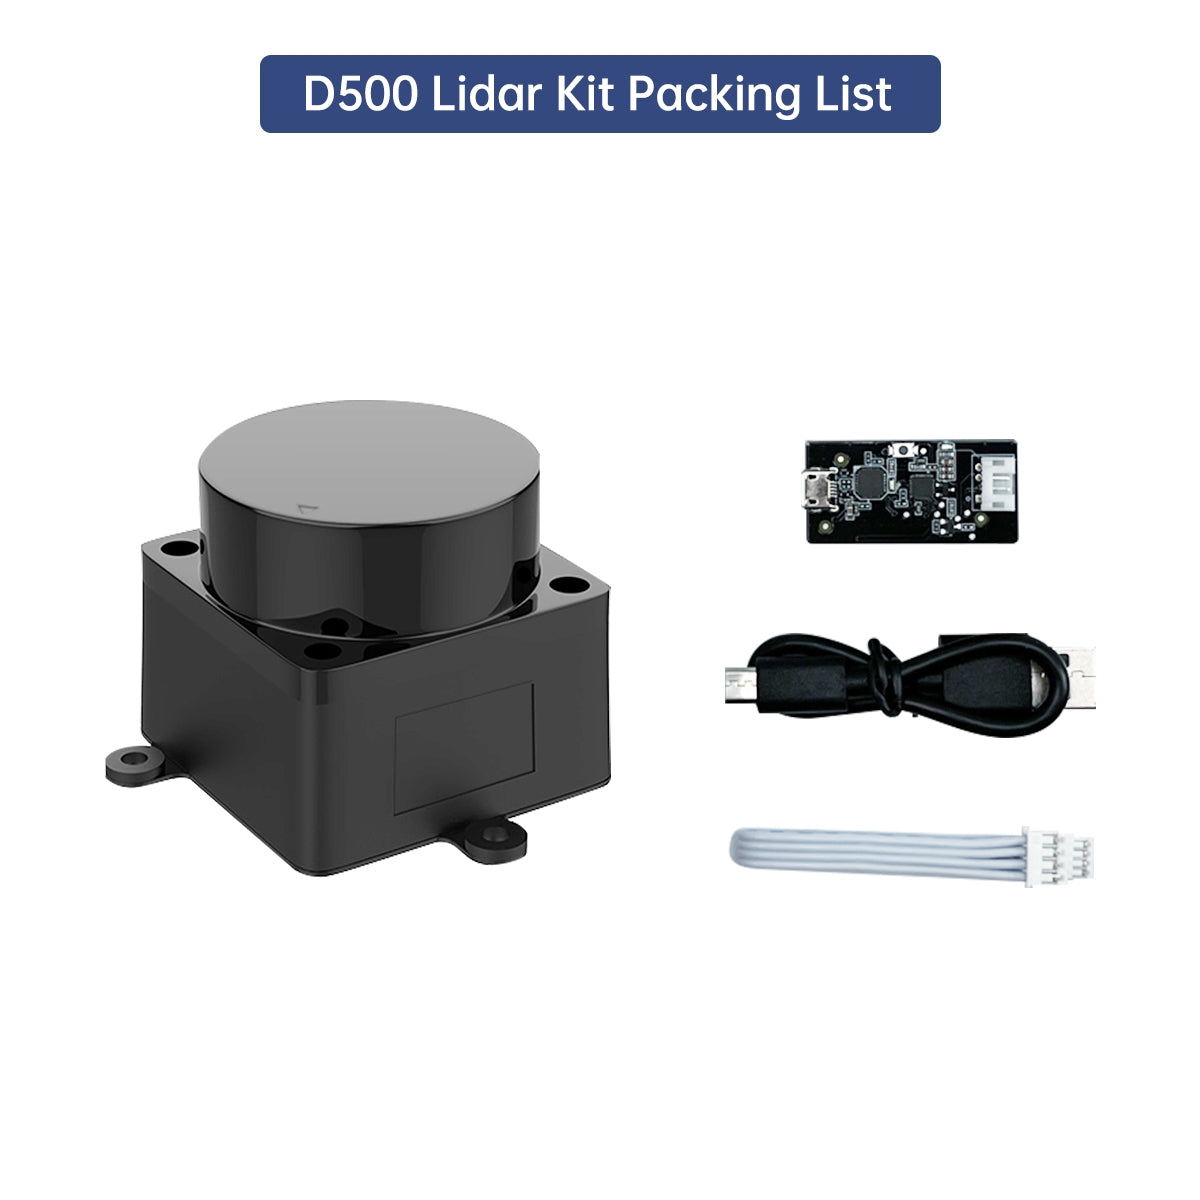 LD19 D500 Lidar Developer Kit 360 Degrees DTOF Laser Scanner Support ROS1 ROS2 Raspberry Pi Jetson Nano